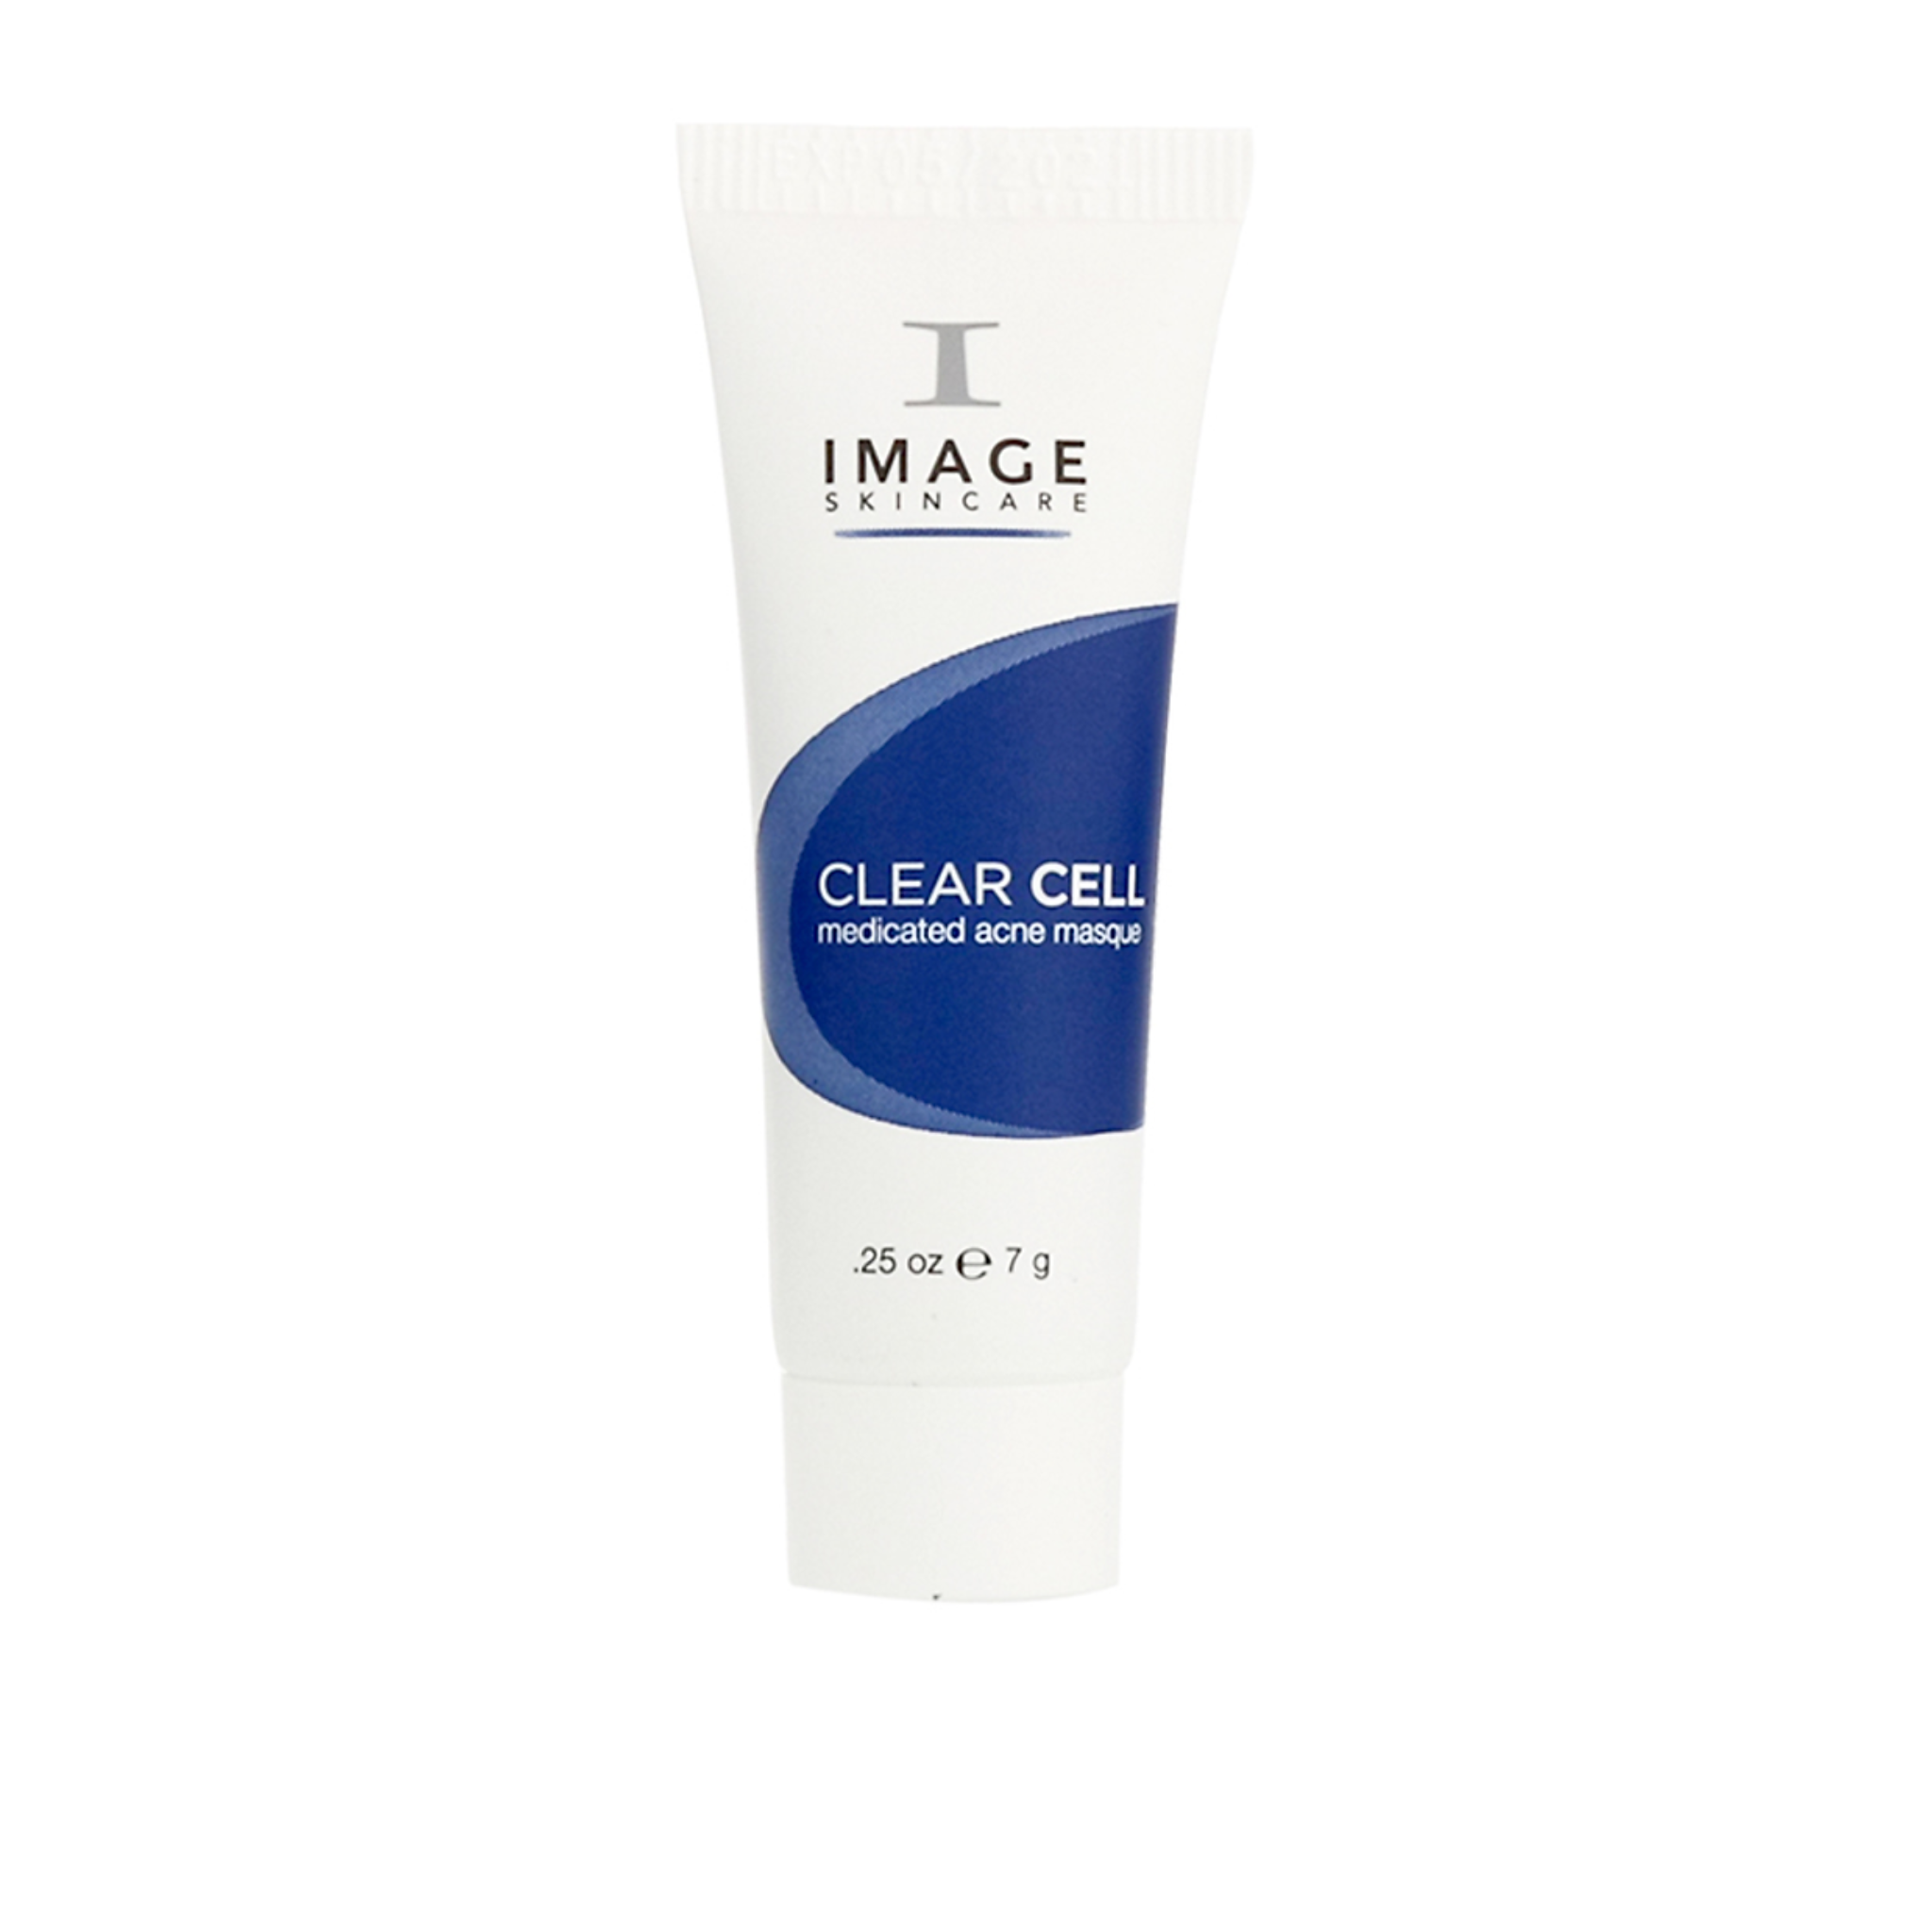  Mặt Nạ Giảm Nhờn, Điều Trị Mụn Image Clearcell Medicated Acne Masque 7.4ml 